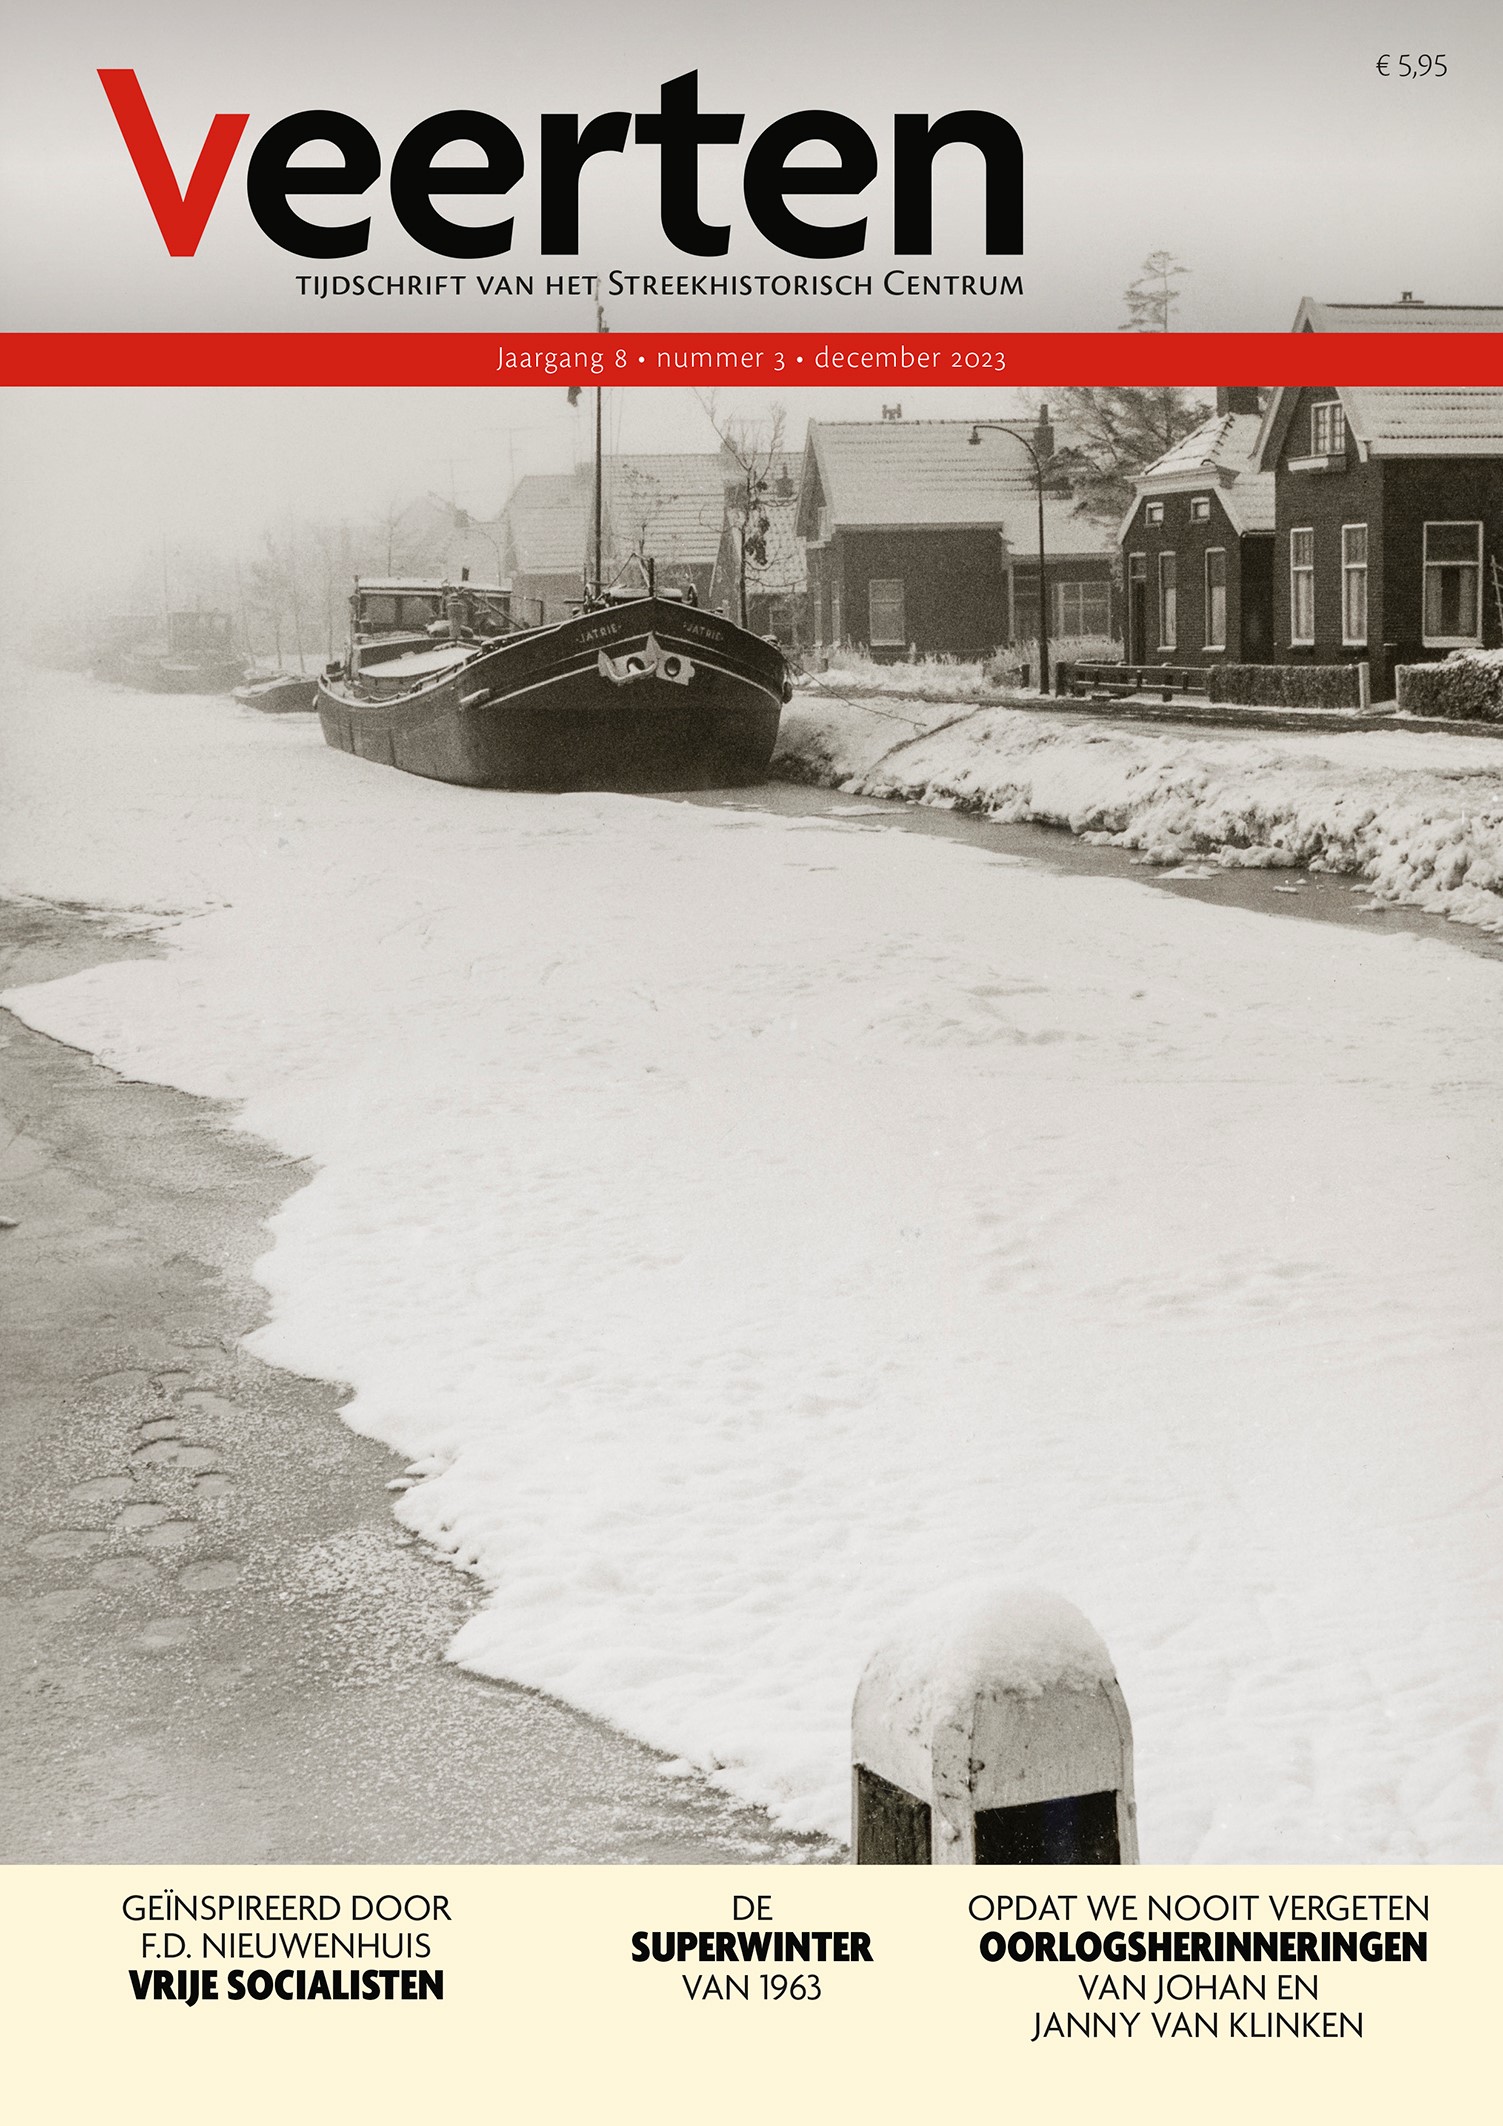 De cover van Veerten 8-3 met de Jatrie in het ijs aan de Cereskade.